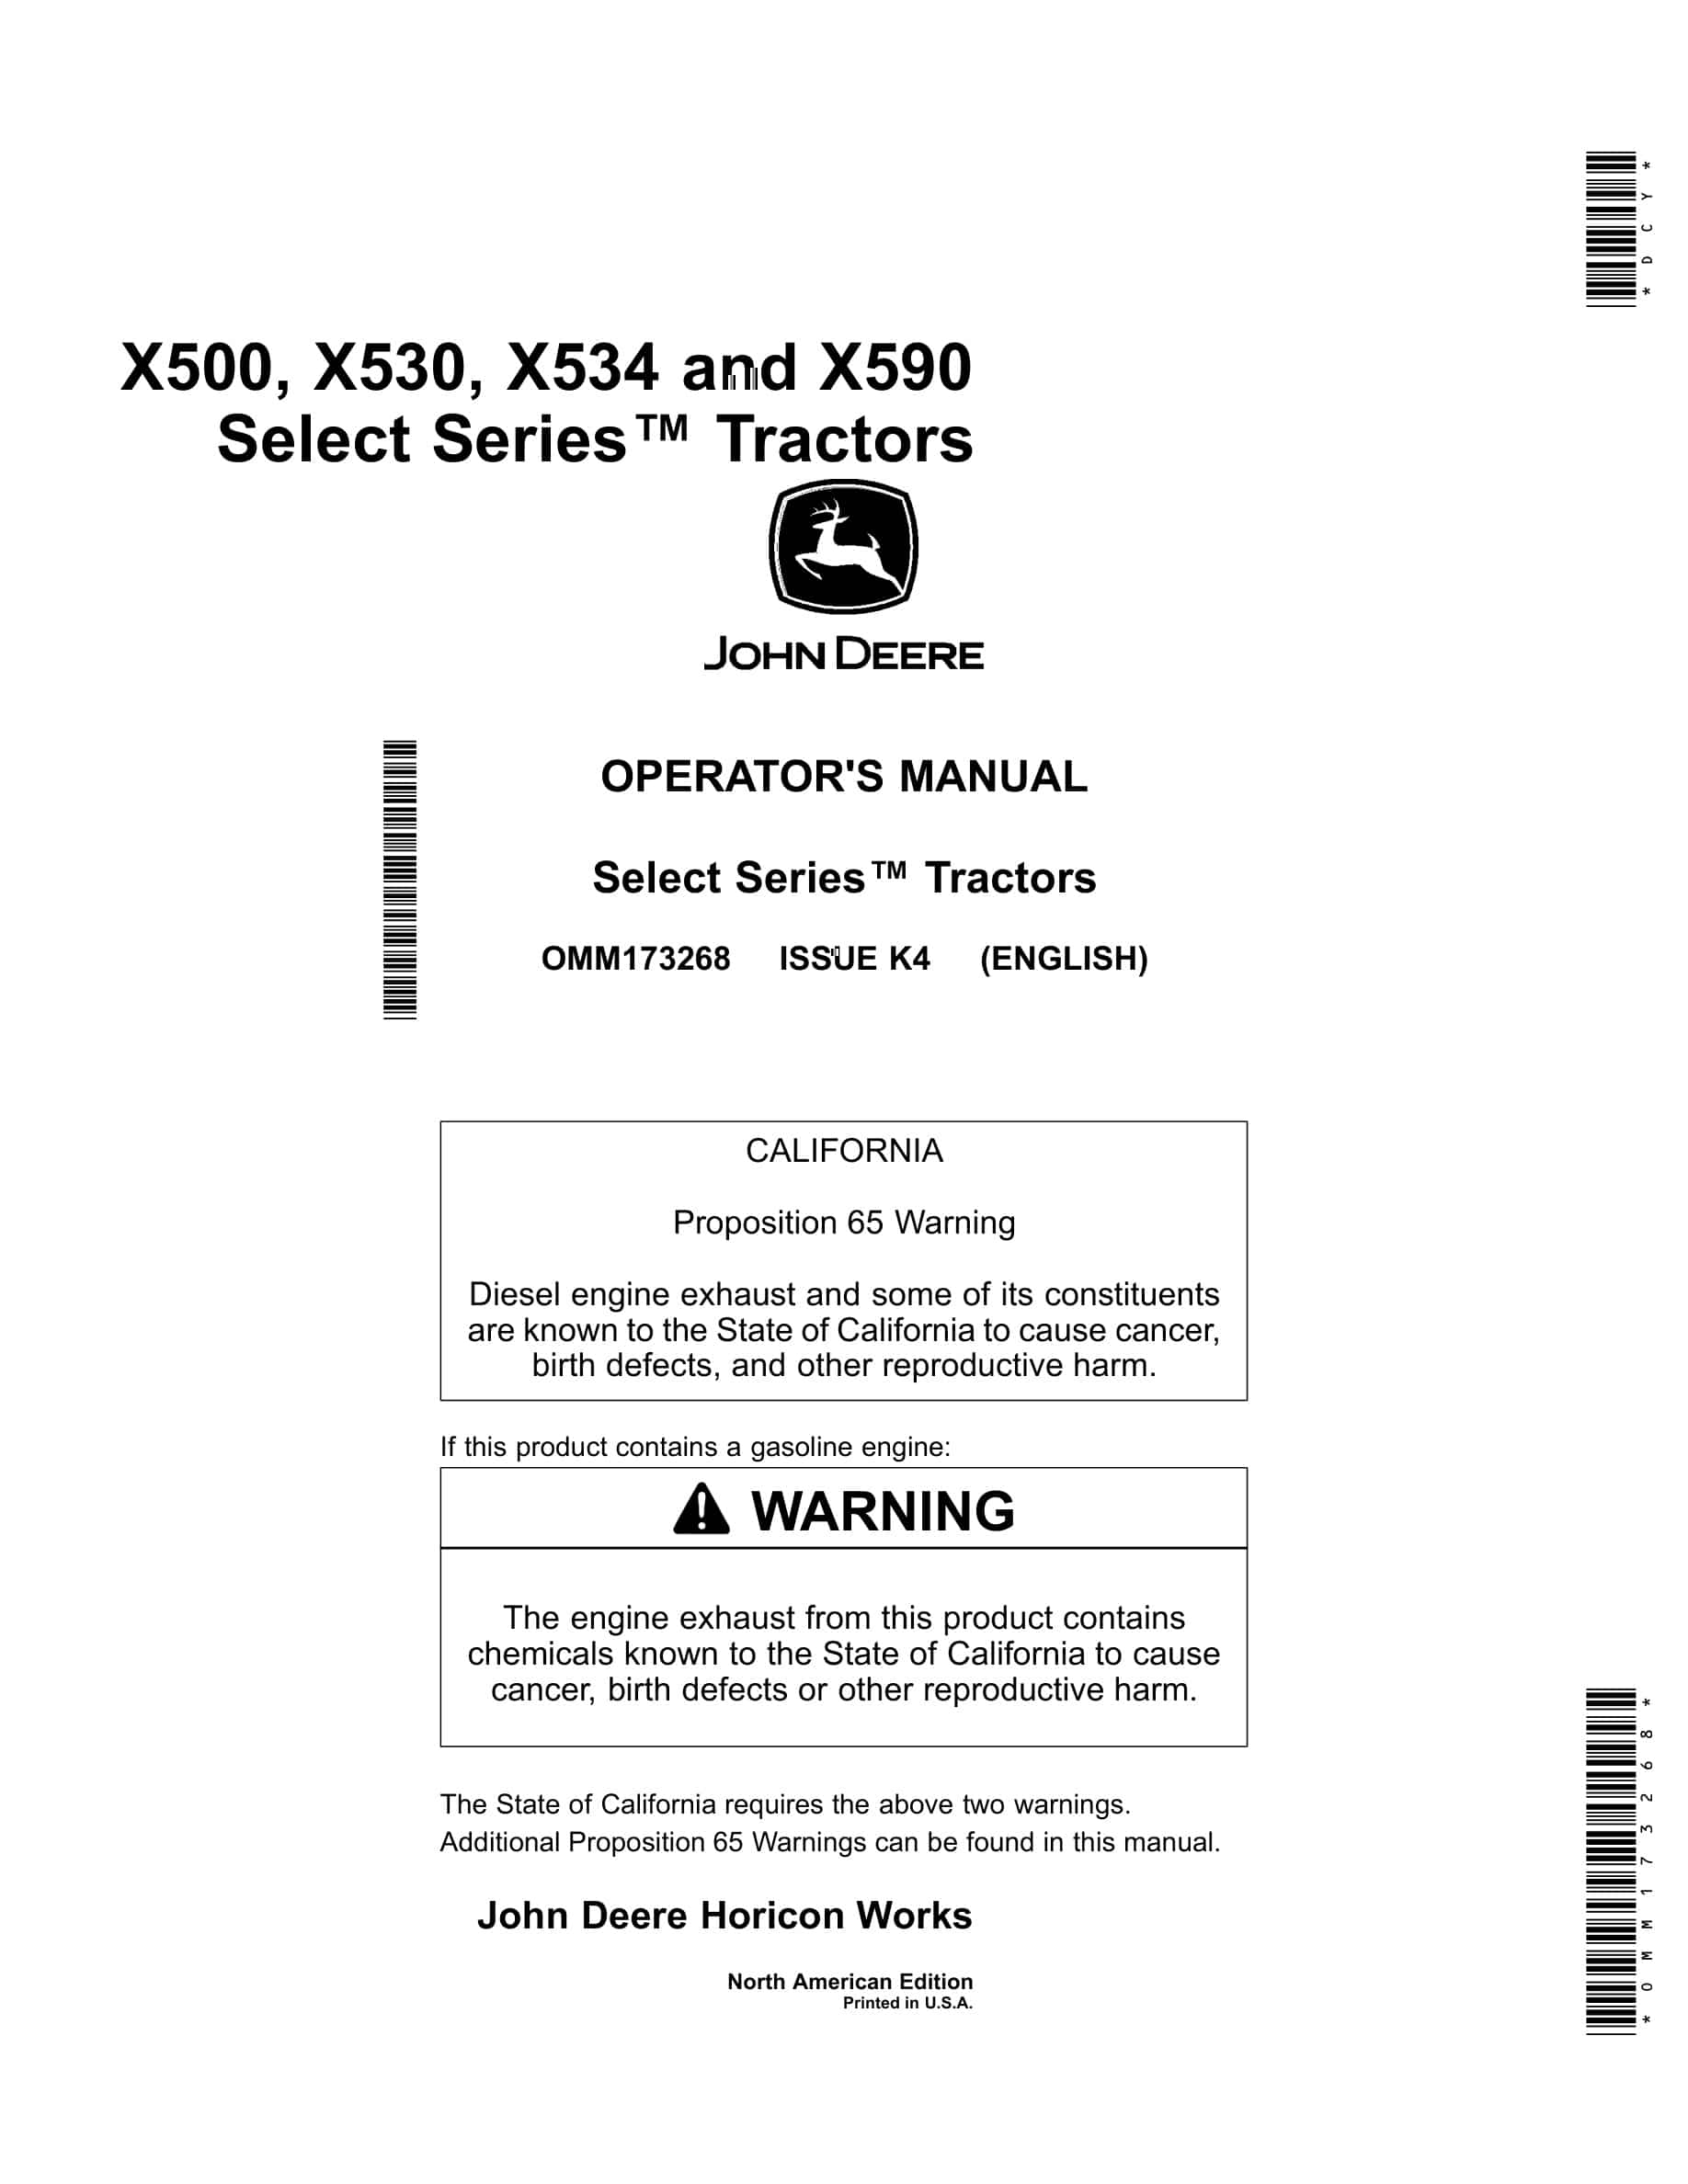 John Deere X500, X530, X534 and X590 Tractor Operator Manual OMM173268-1